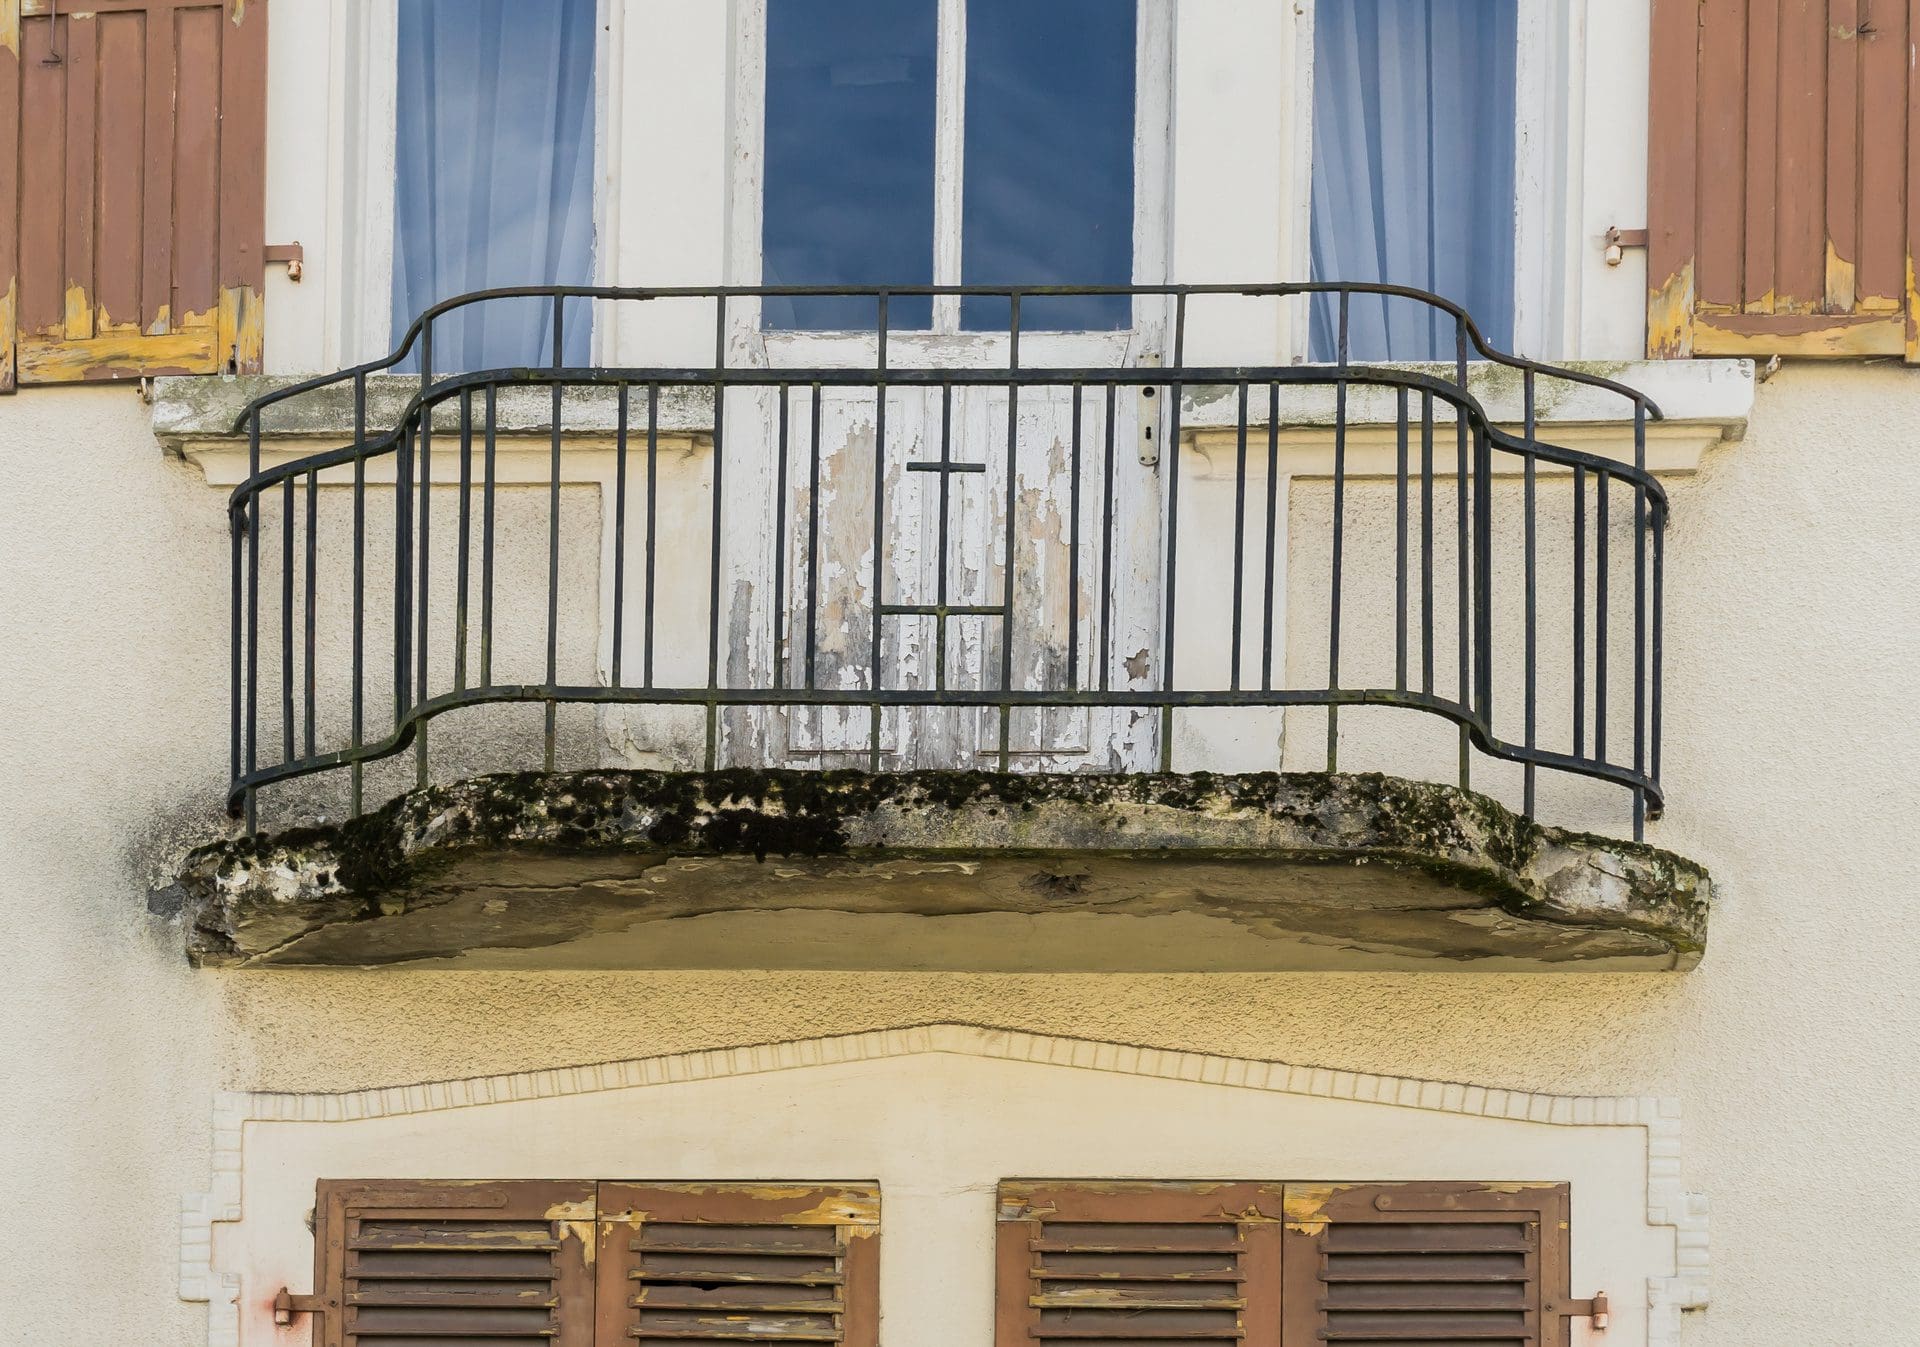 Balkon undicht - Was tun, wer haftet? Ist das ggf. ein Versicherungsschaden? (© Fotoschlick / stock.adobe.com)